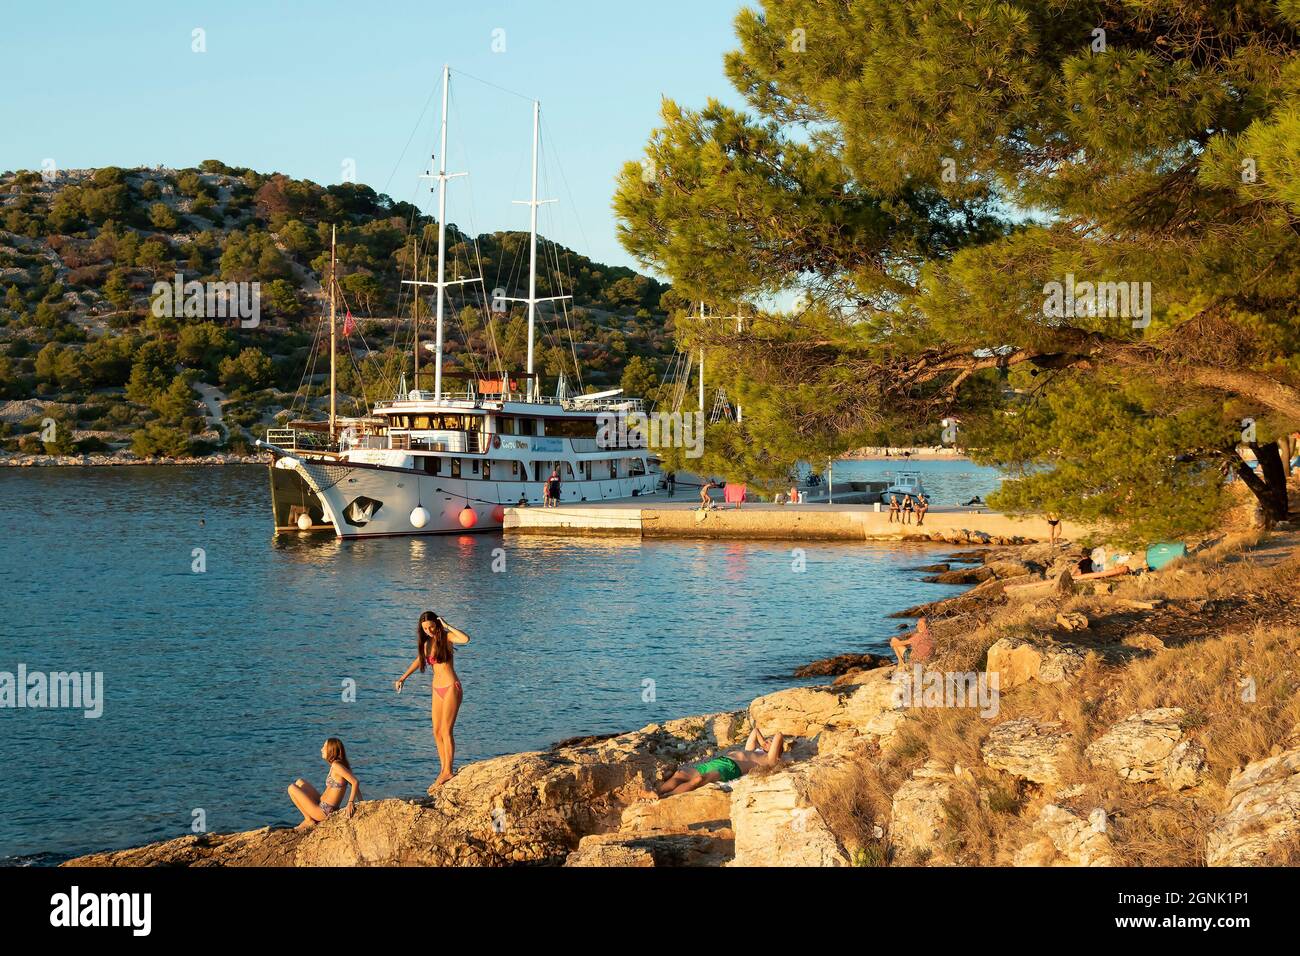 Podvrske, Murter, Croacia - 26 de agosto de 2021: Playa rocosa con pinos y personas en trajes de baño, y el barco atracó en el muelle detrás de ellos, en verano s. Foto de stock